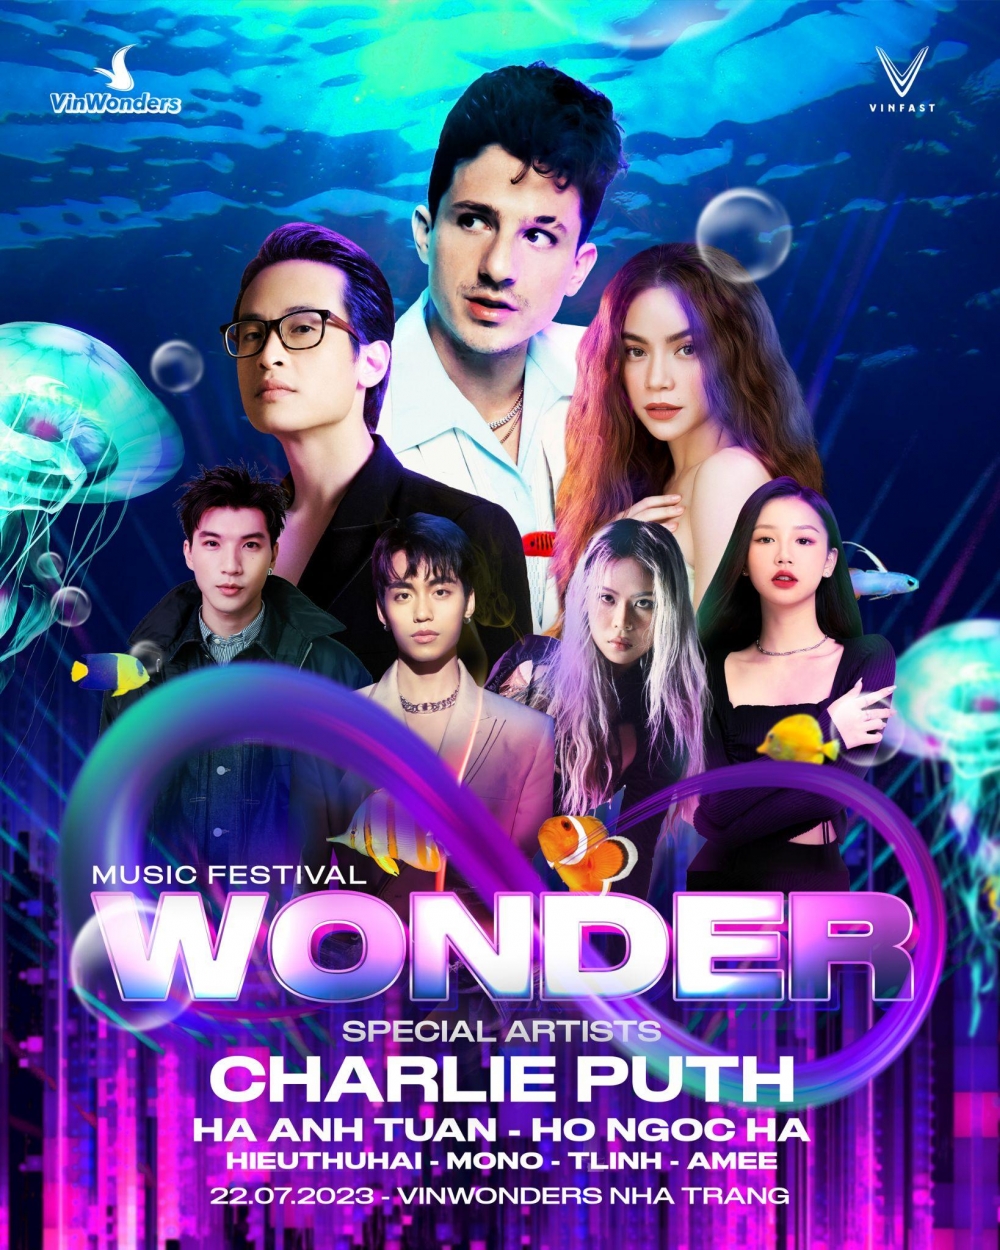 8Wonder mở bán vé - công bố dàn sao Việt biểu diễn cùng Charlie Puth